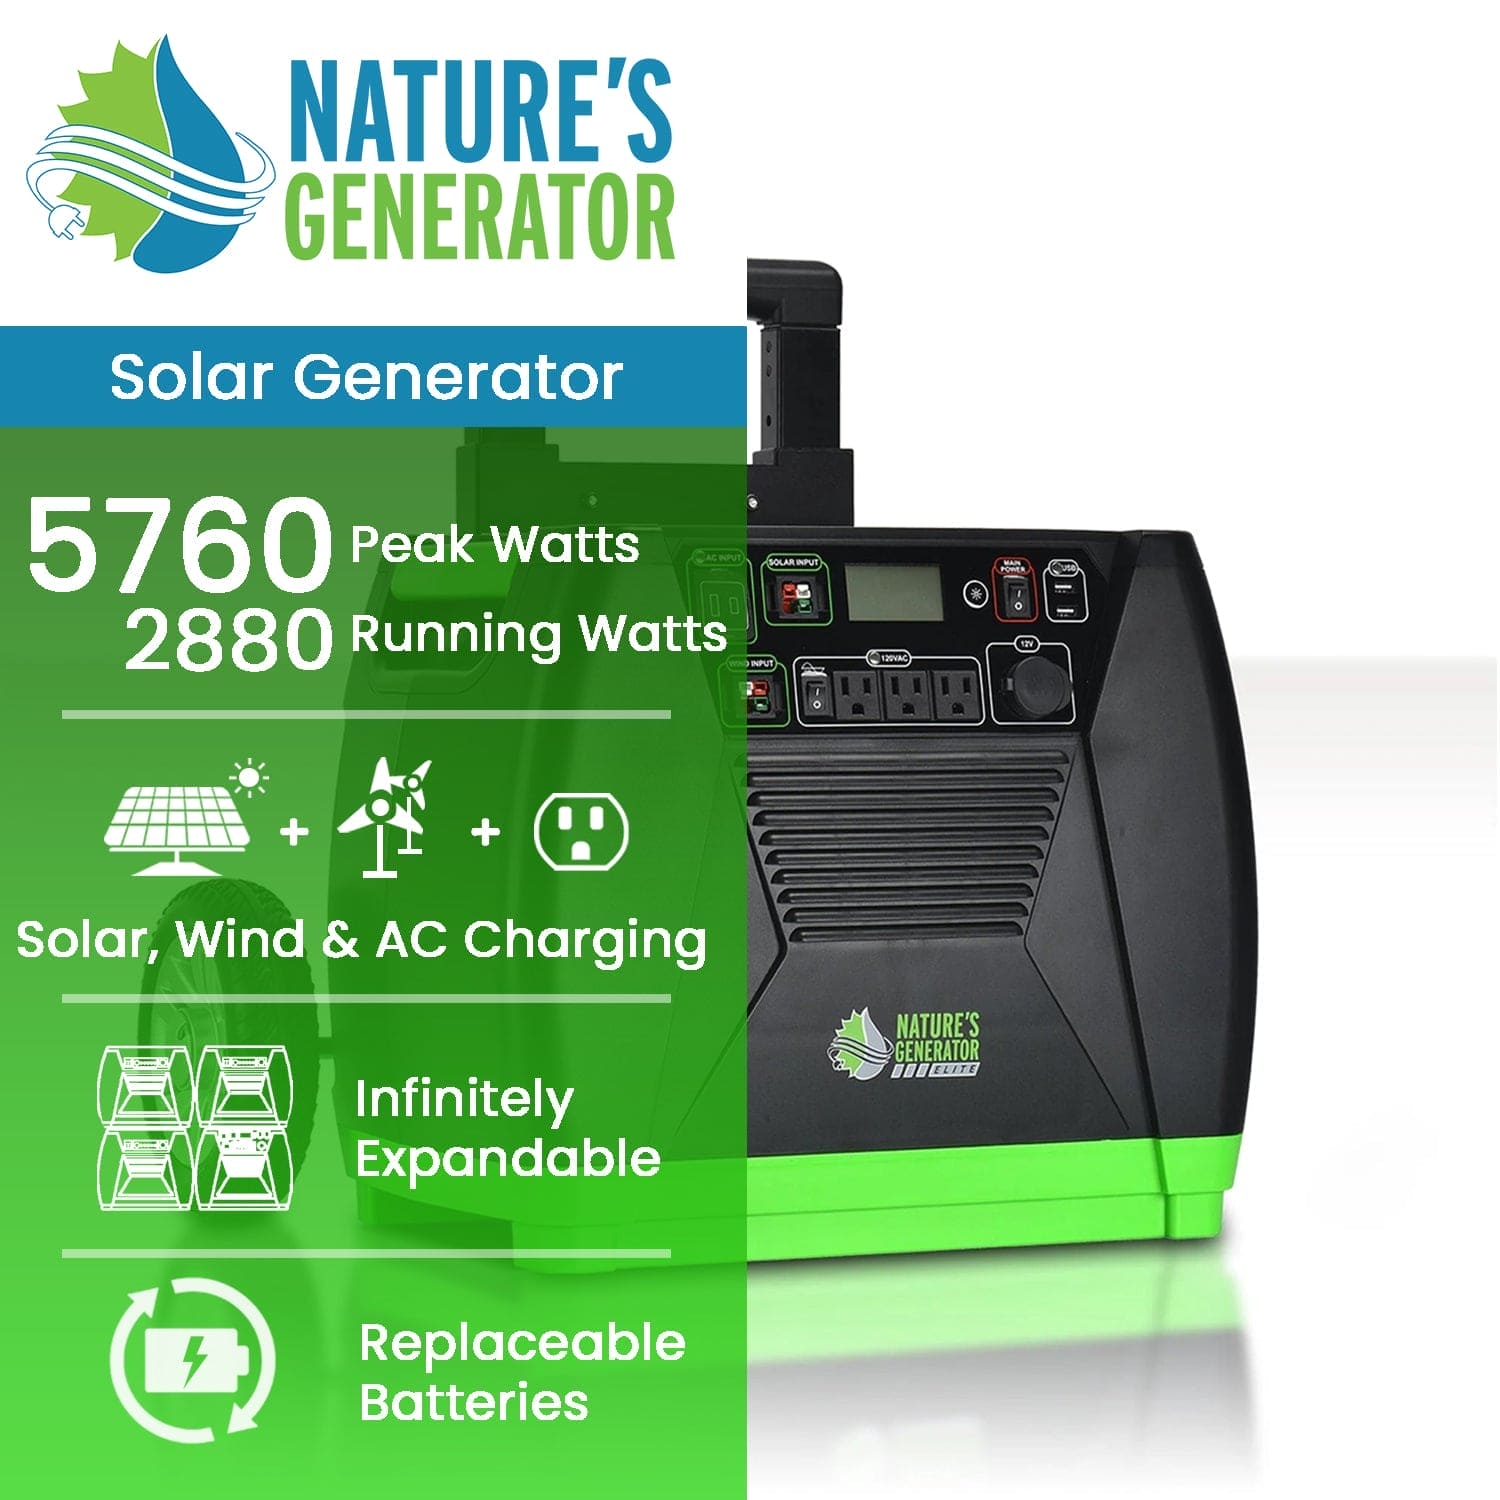 Nature's Generator Elite - Nature's Generator